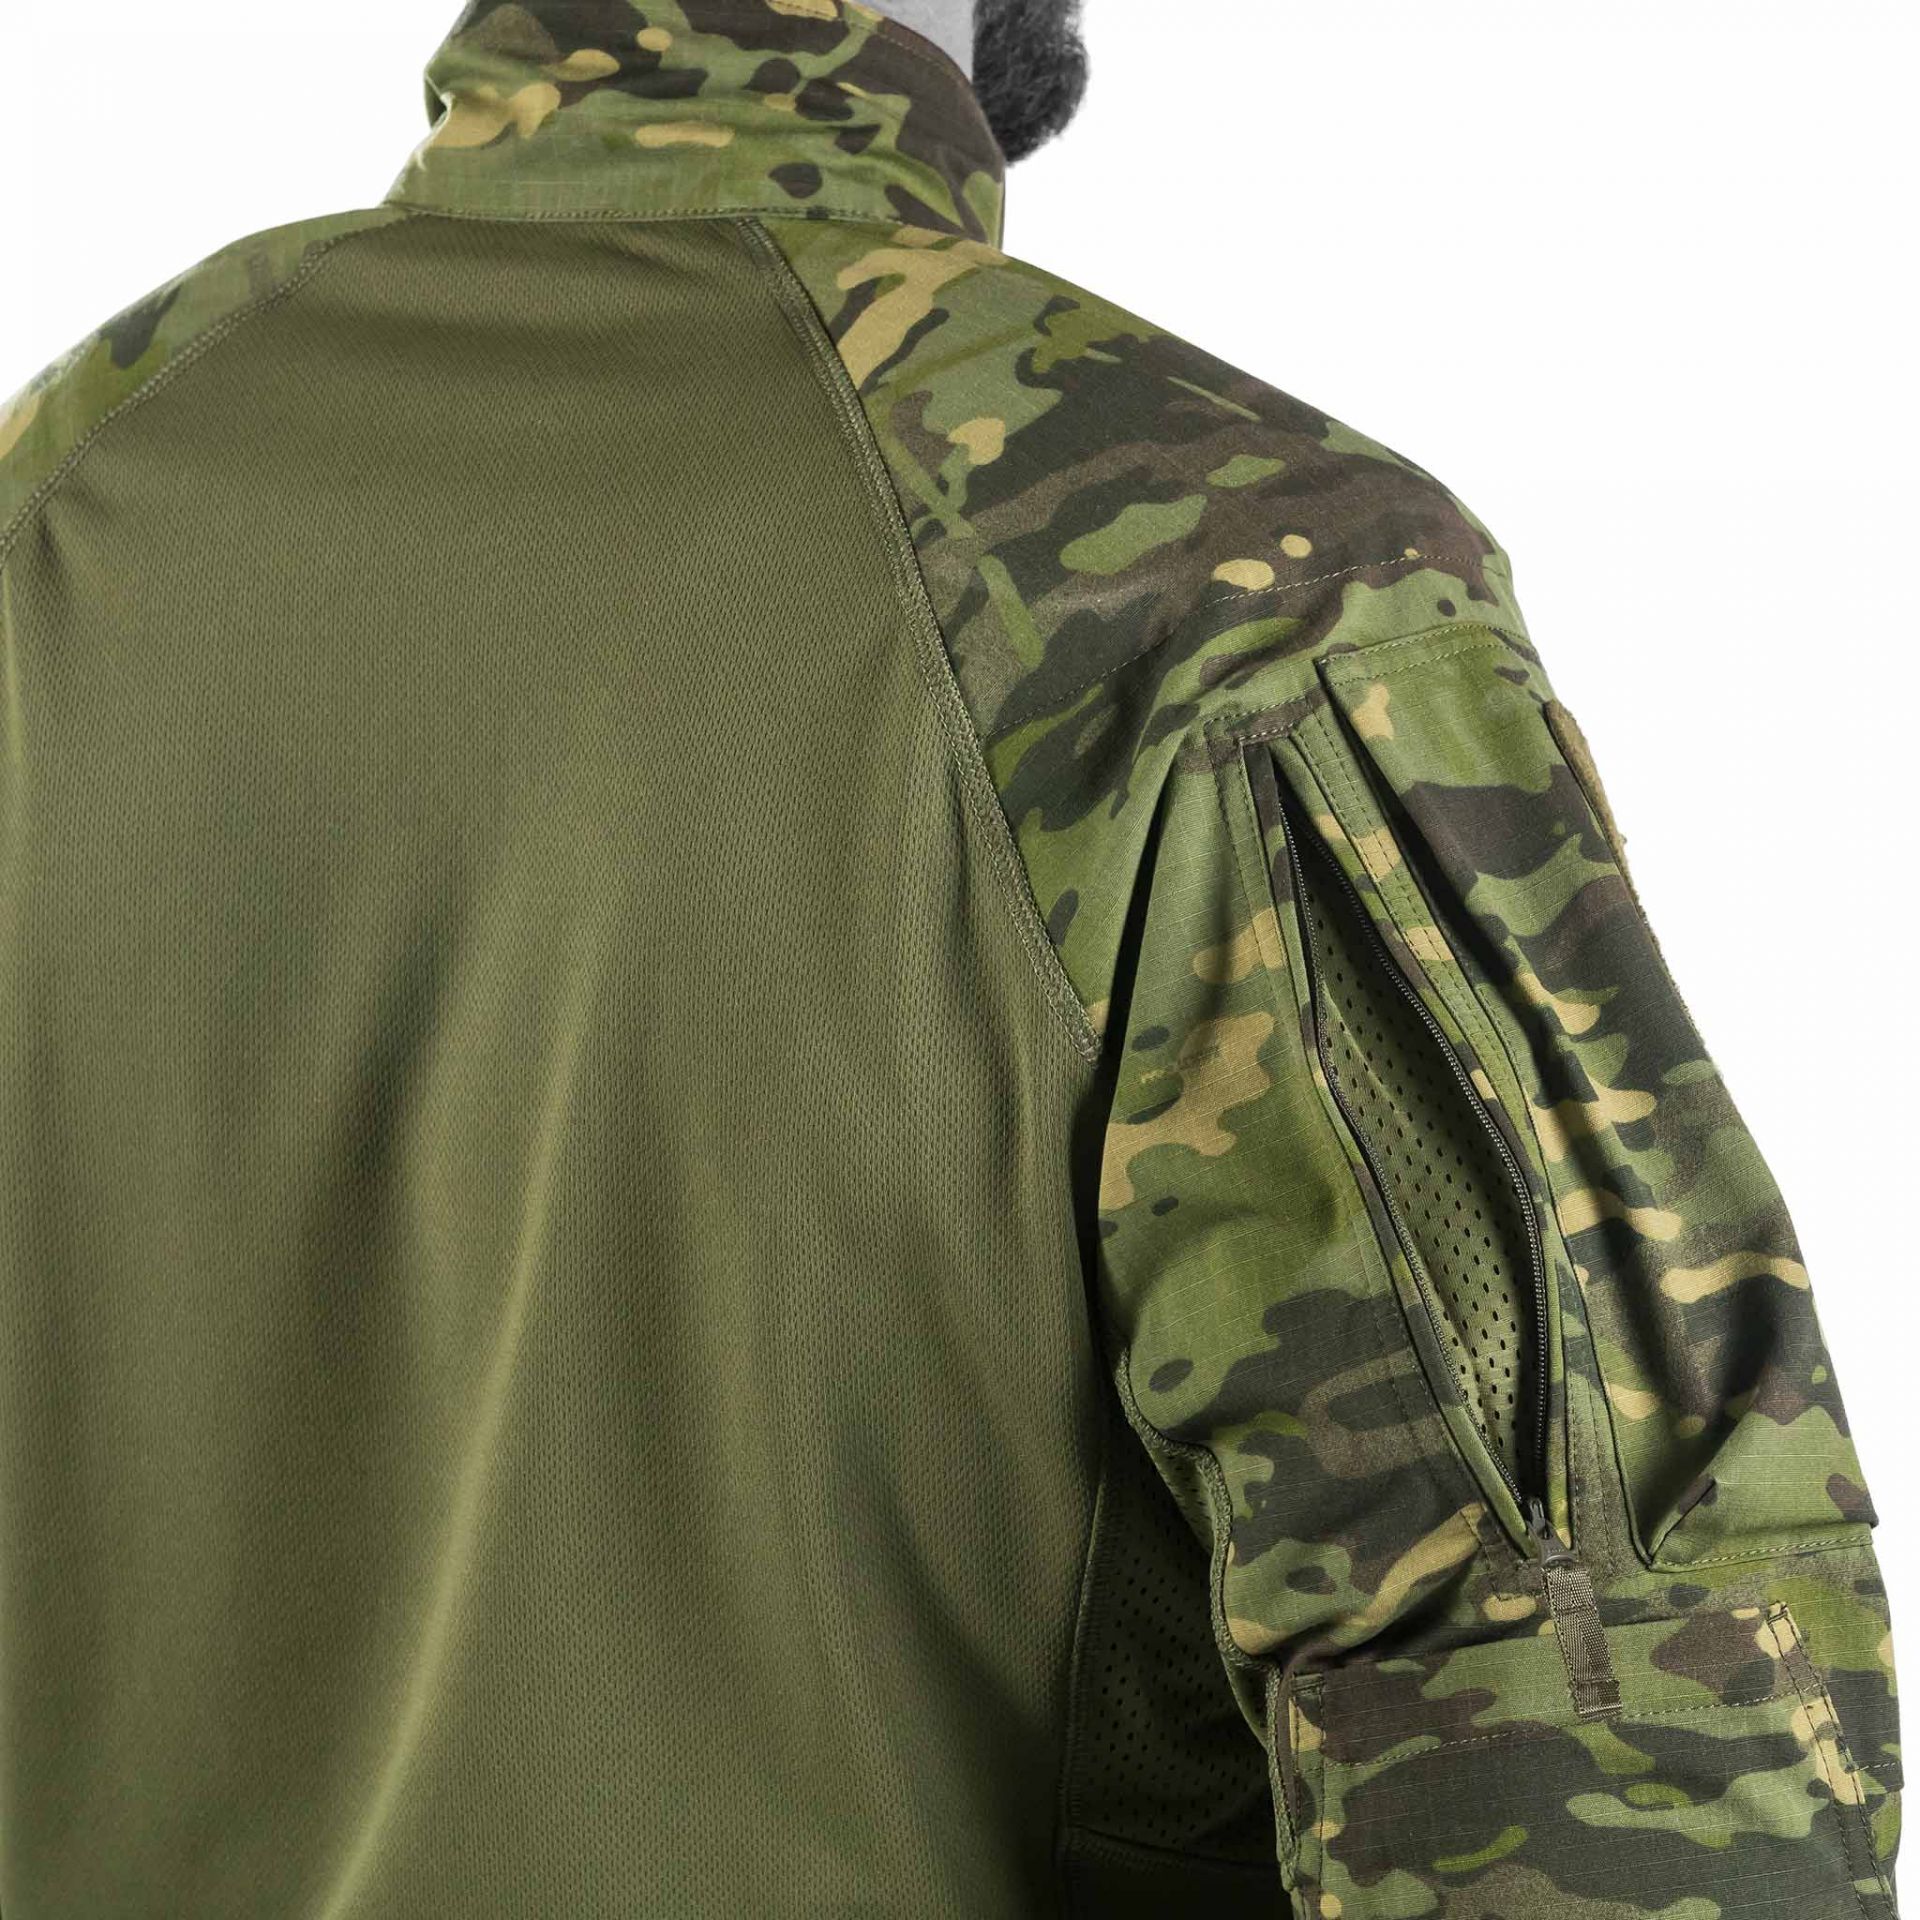 UF Pro ® Striker XT Combat Shirt Gen II BW Flecktarn Bundeswehr